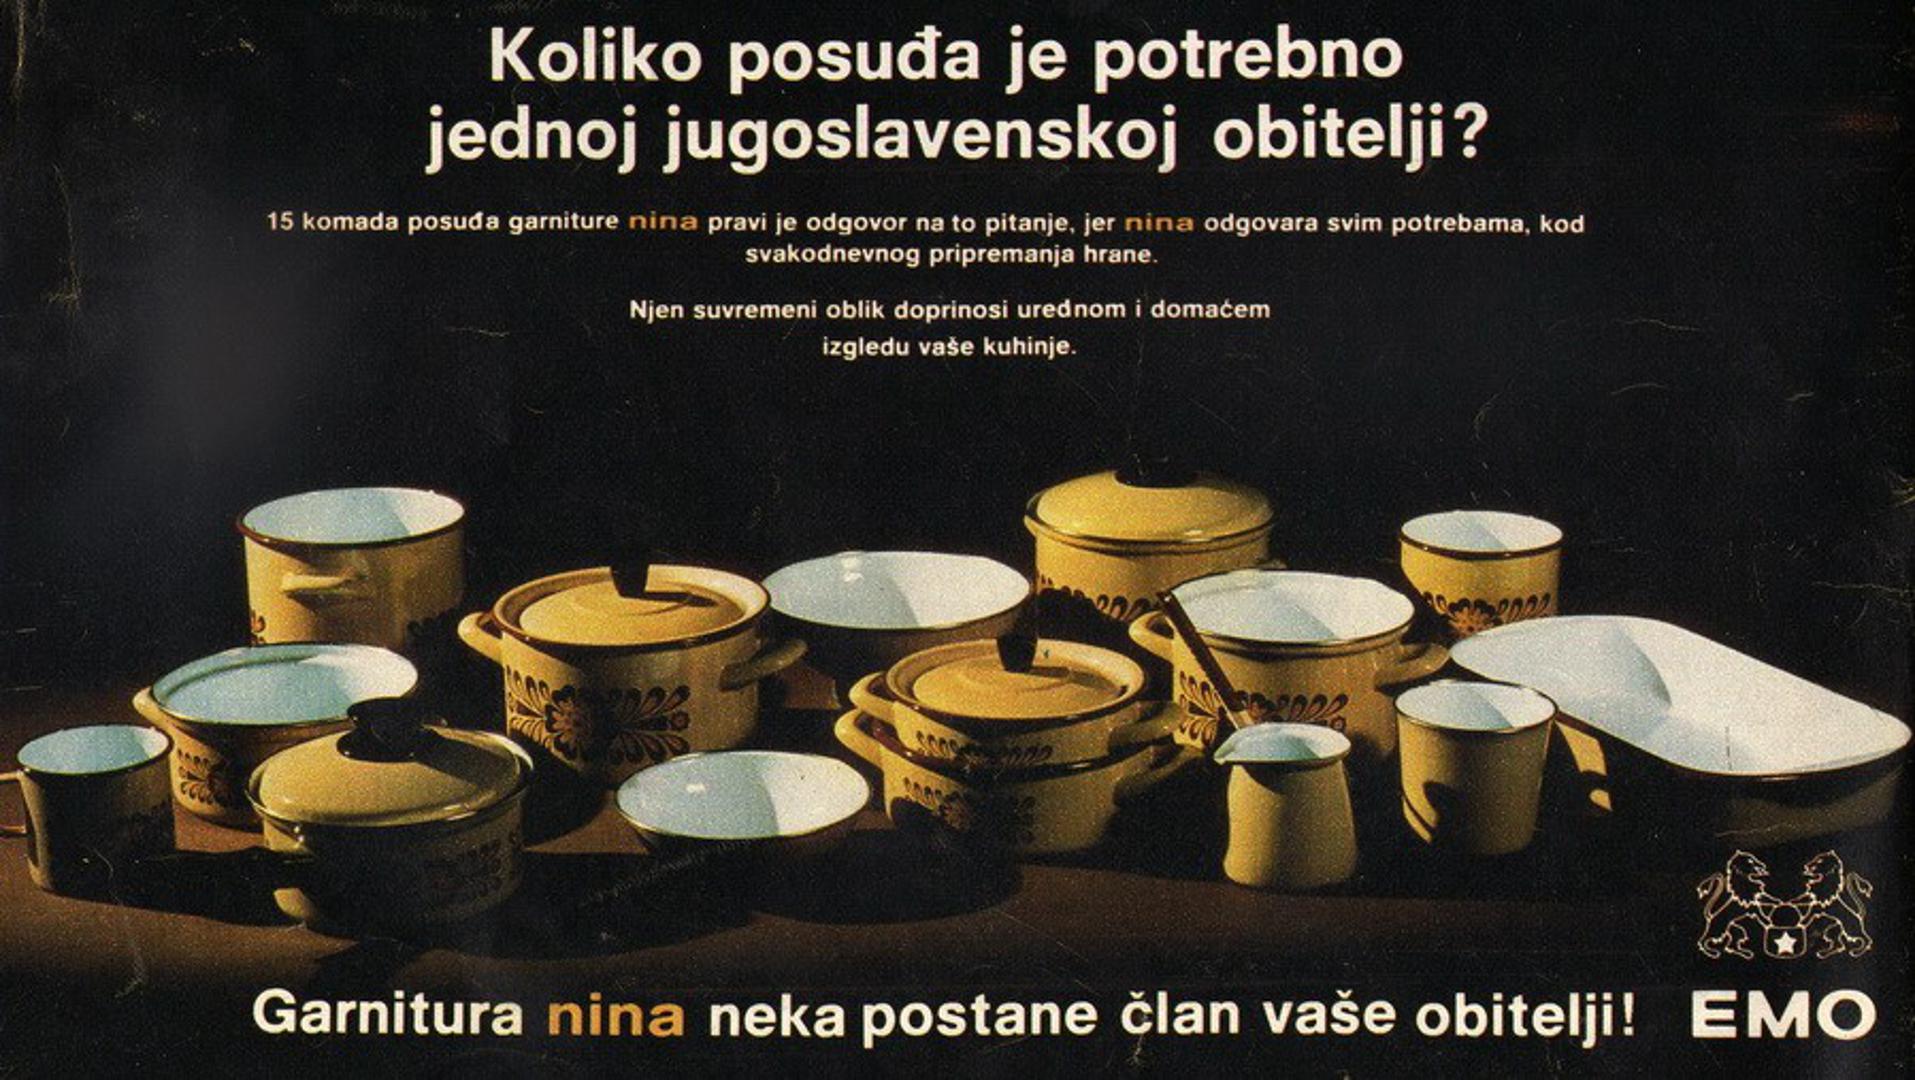 Ispijanje kave običaj je kojeg Hrvati shvaćaju itekako ozbiljno, no znate li kako je to nekada izgledalo? U Facebook grupi 'Retroteka' objavljen je niz fotografija koje prikazuju različita pakiranja kave iz 70ih i 80ih godina prošloga stoljeća, kao i posuđe koje je krasilo ovaj omiljeni hrvatski običaj.